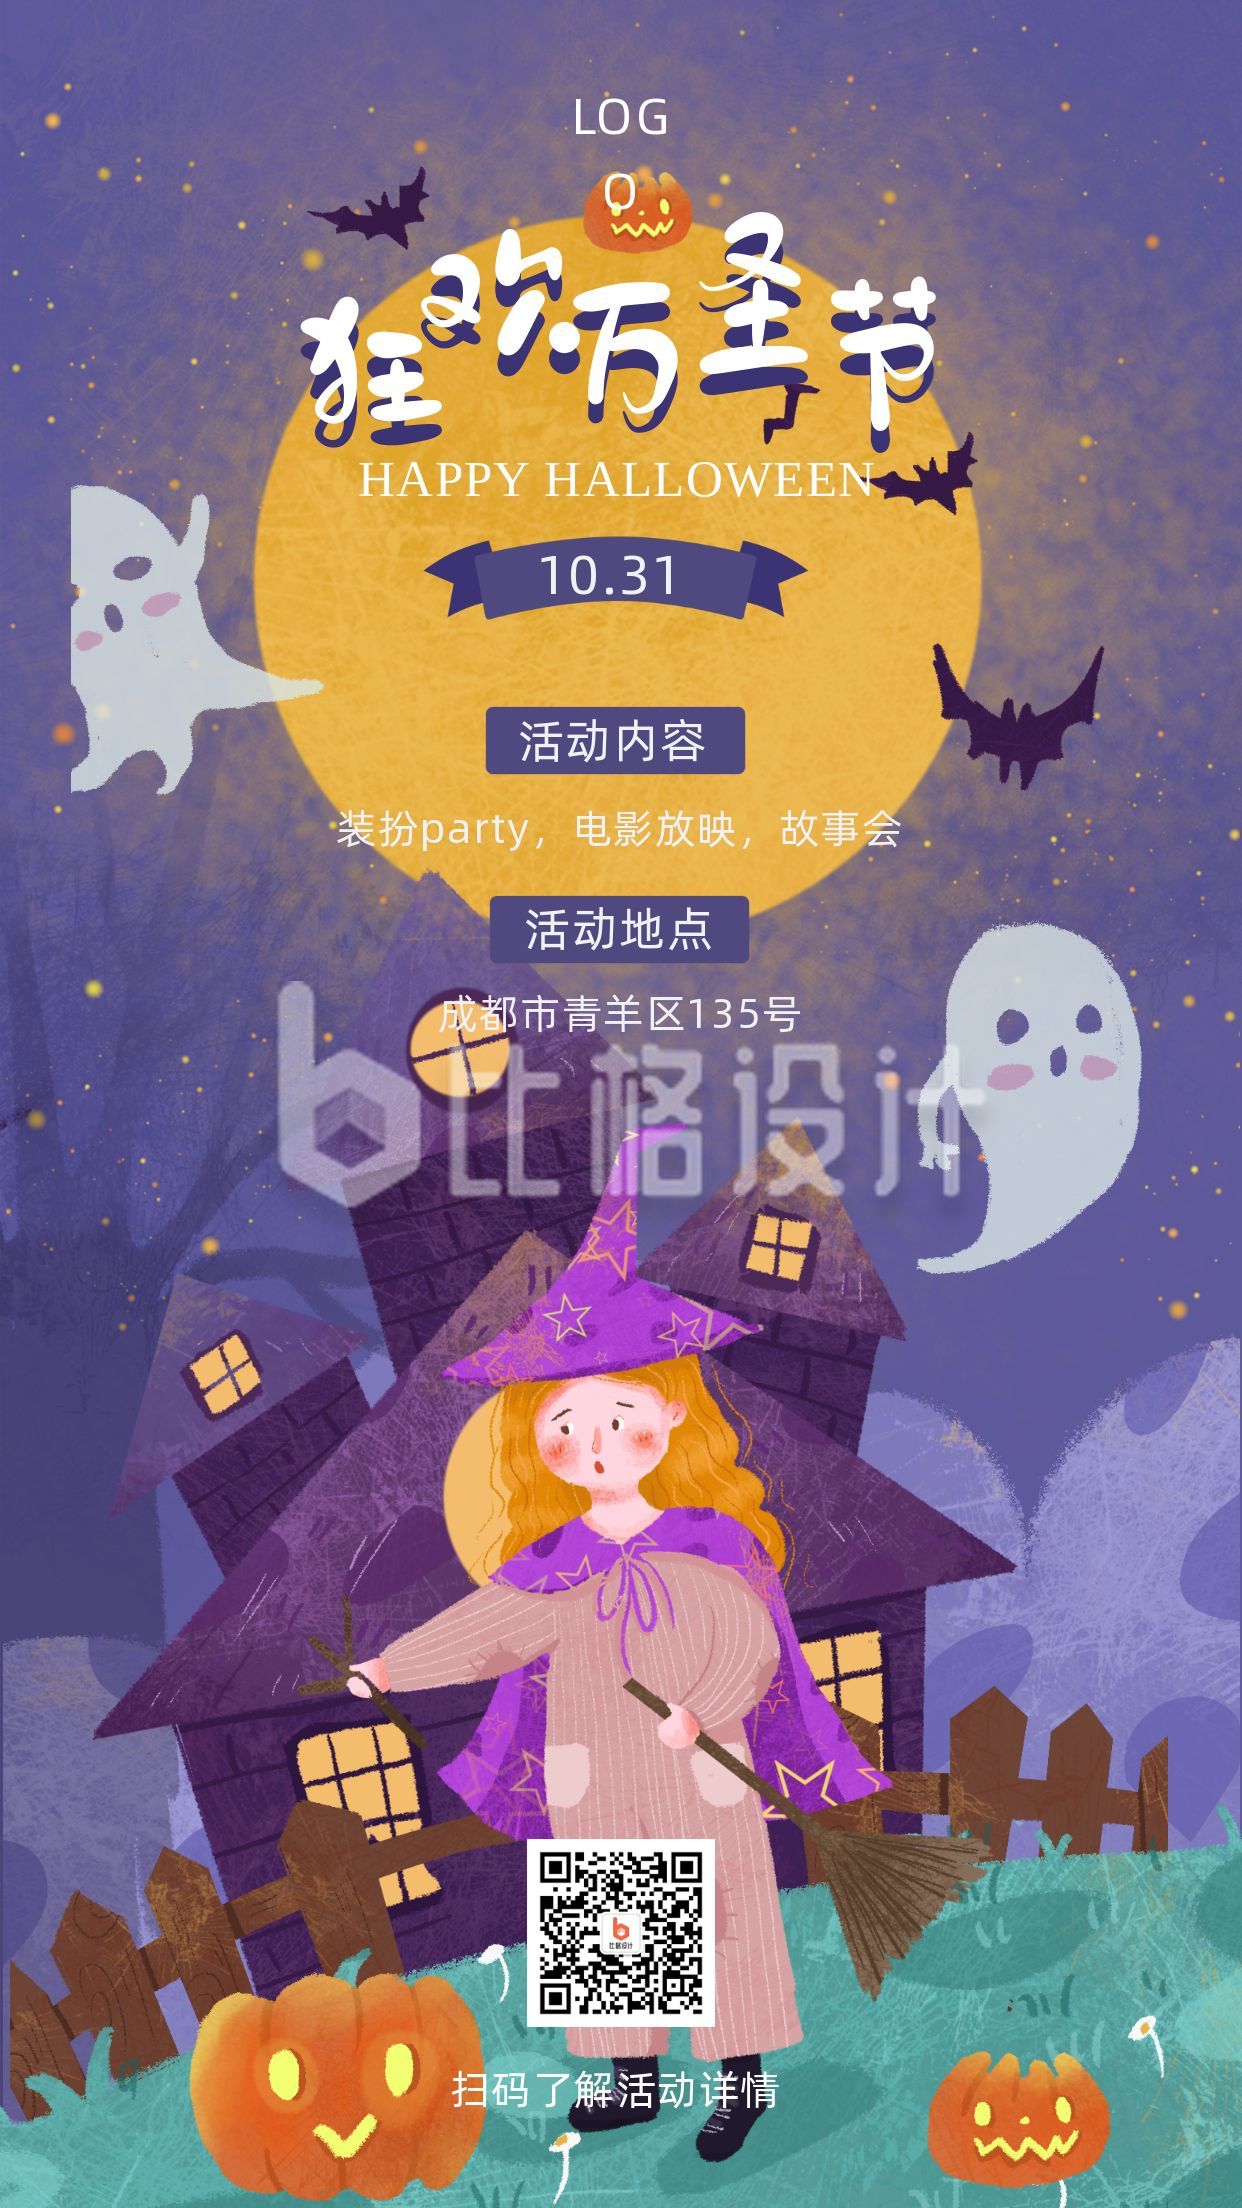 紫色女巫南瓜蝙蝠鬼魂手绘万圣节活动派对通知手机海报